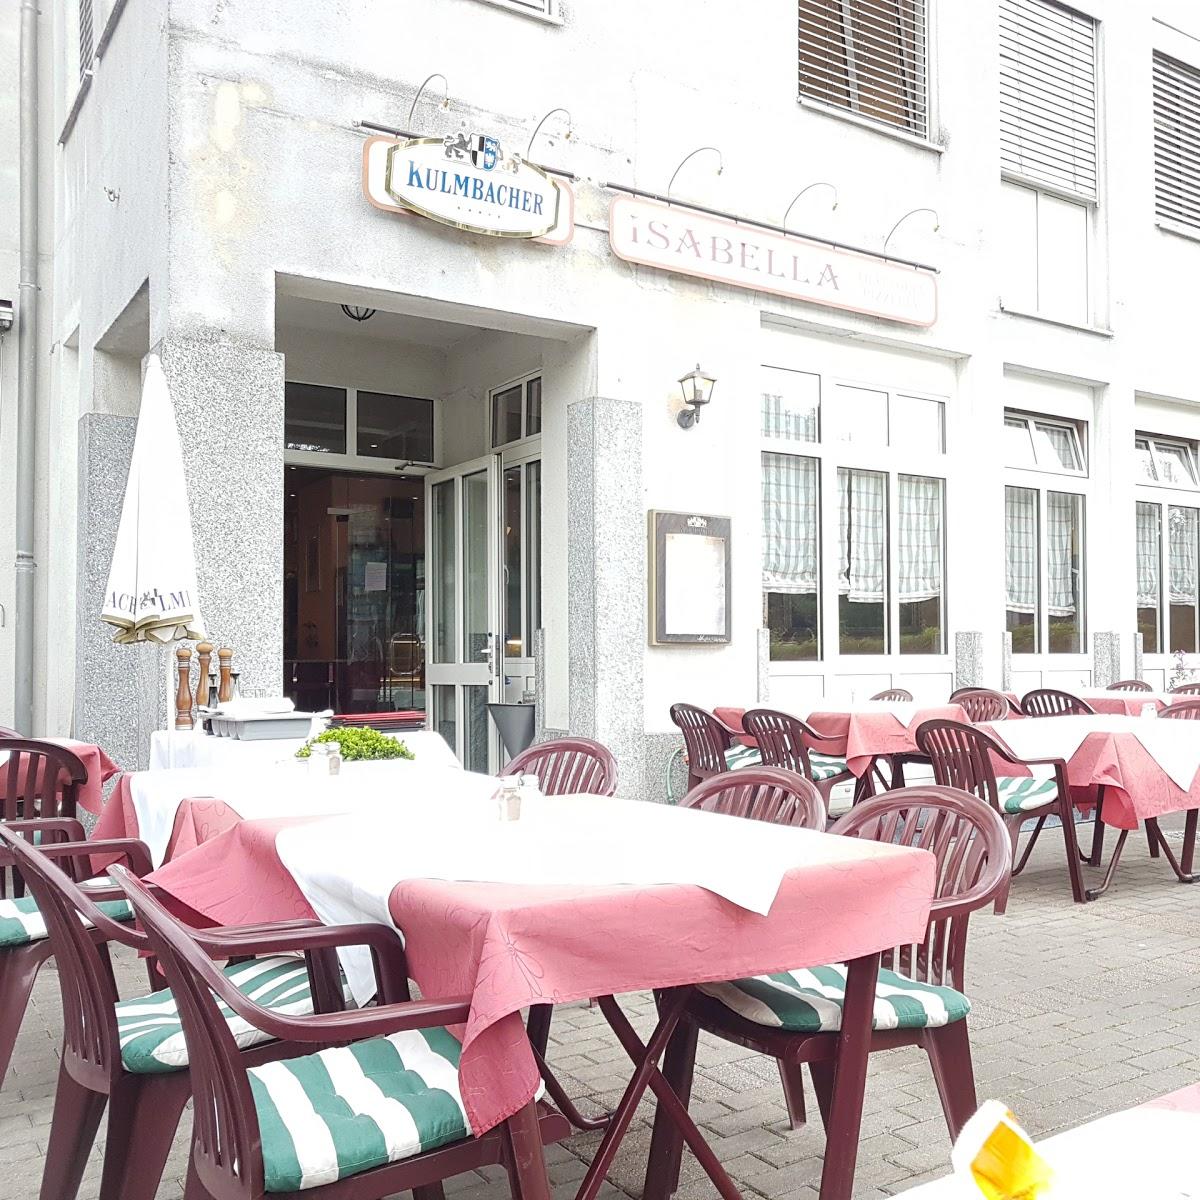 Restaurant "Trattoria Isabella" in München